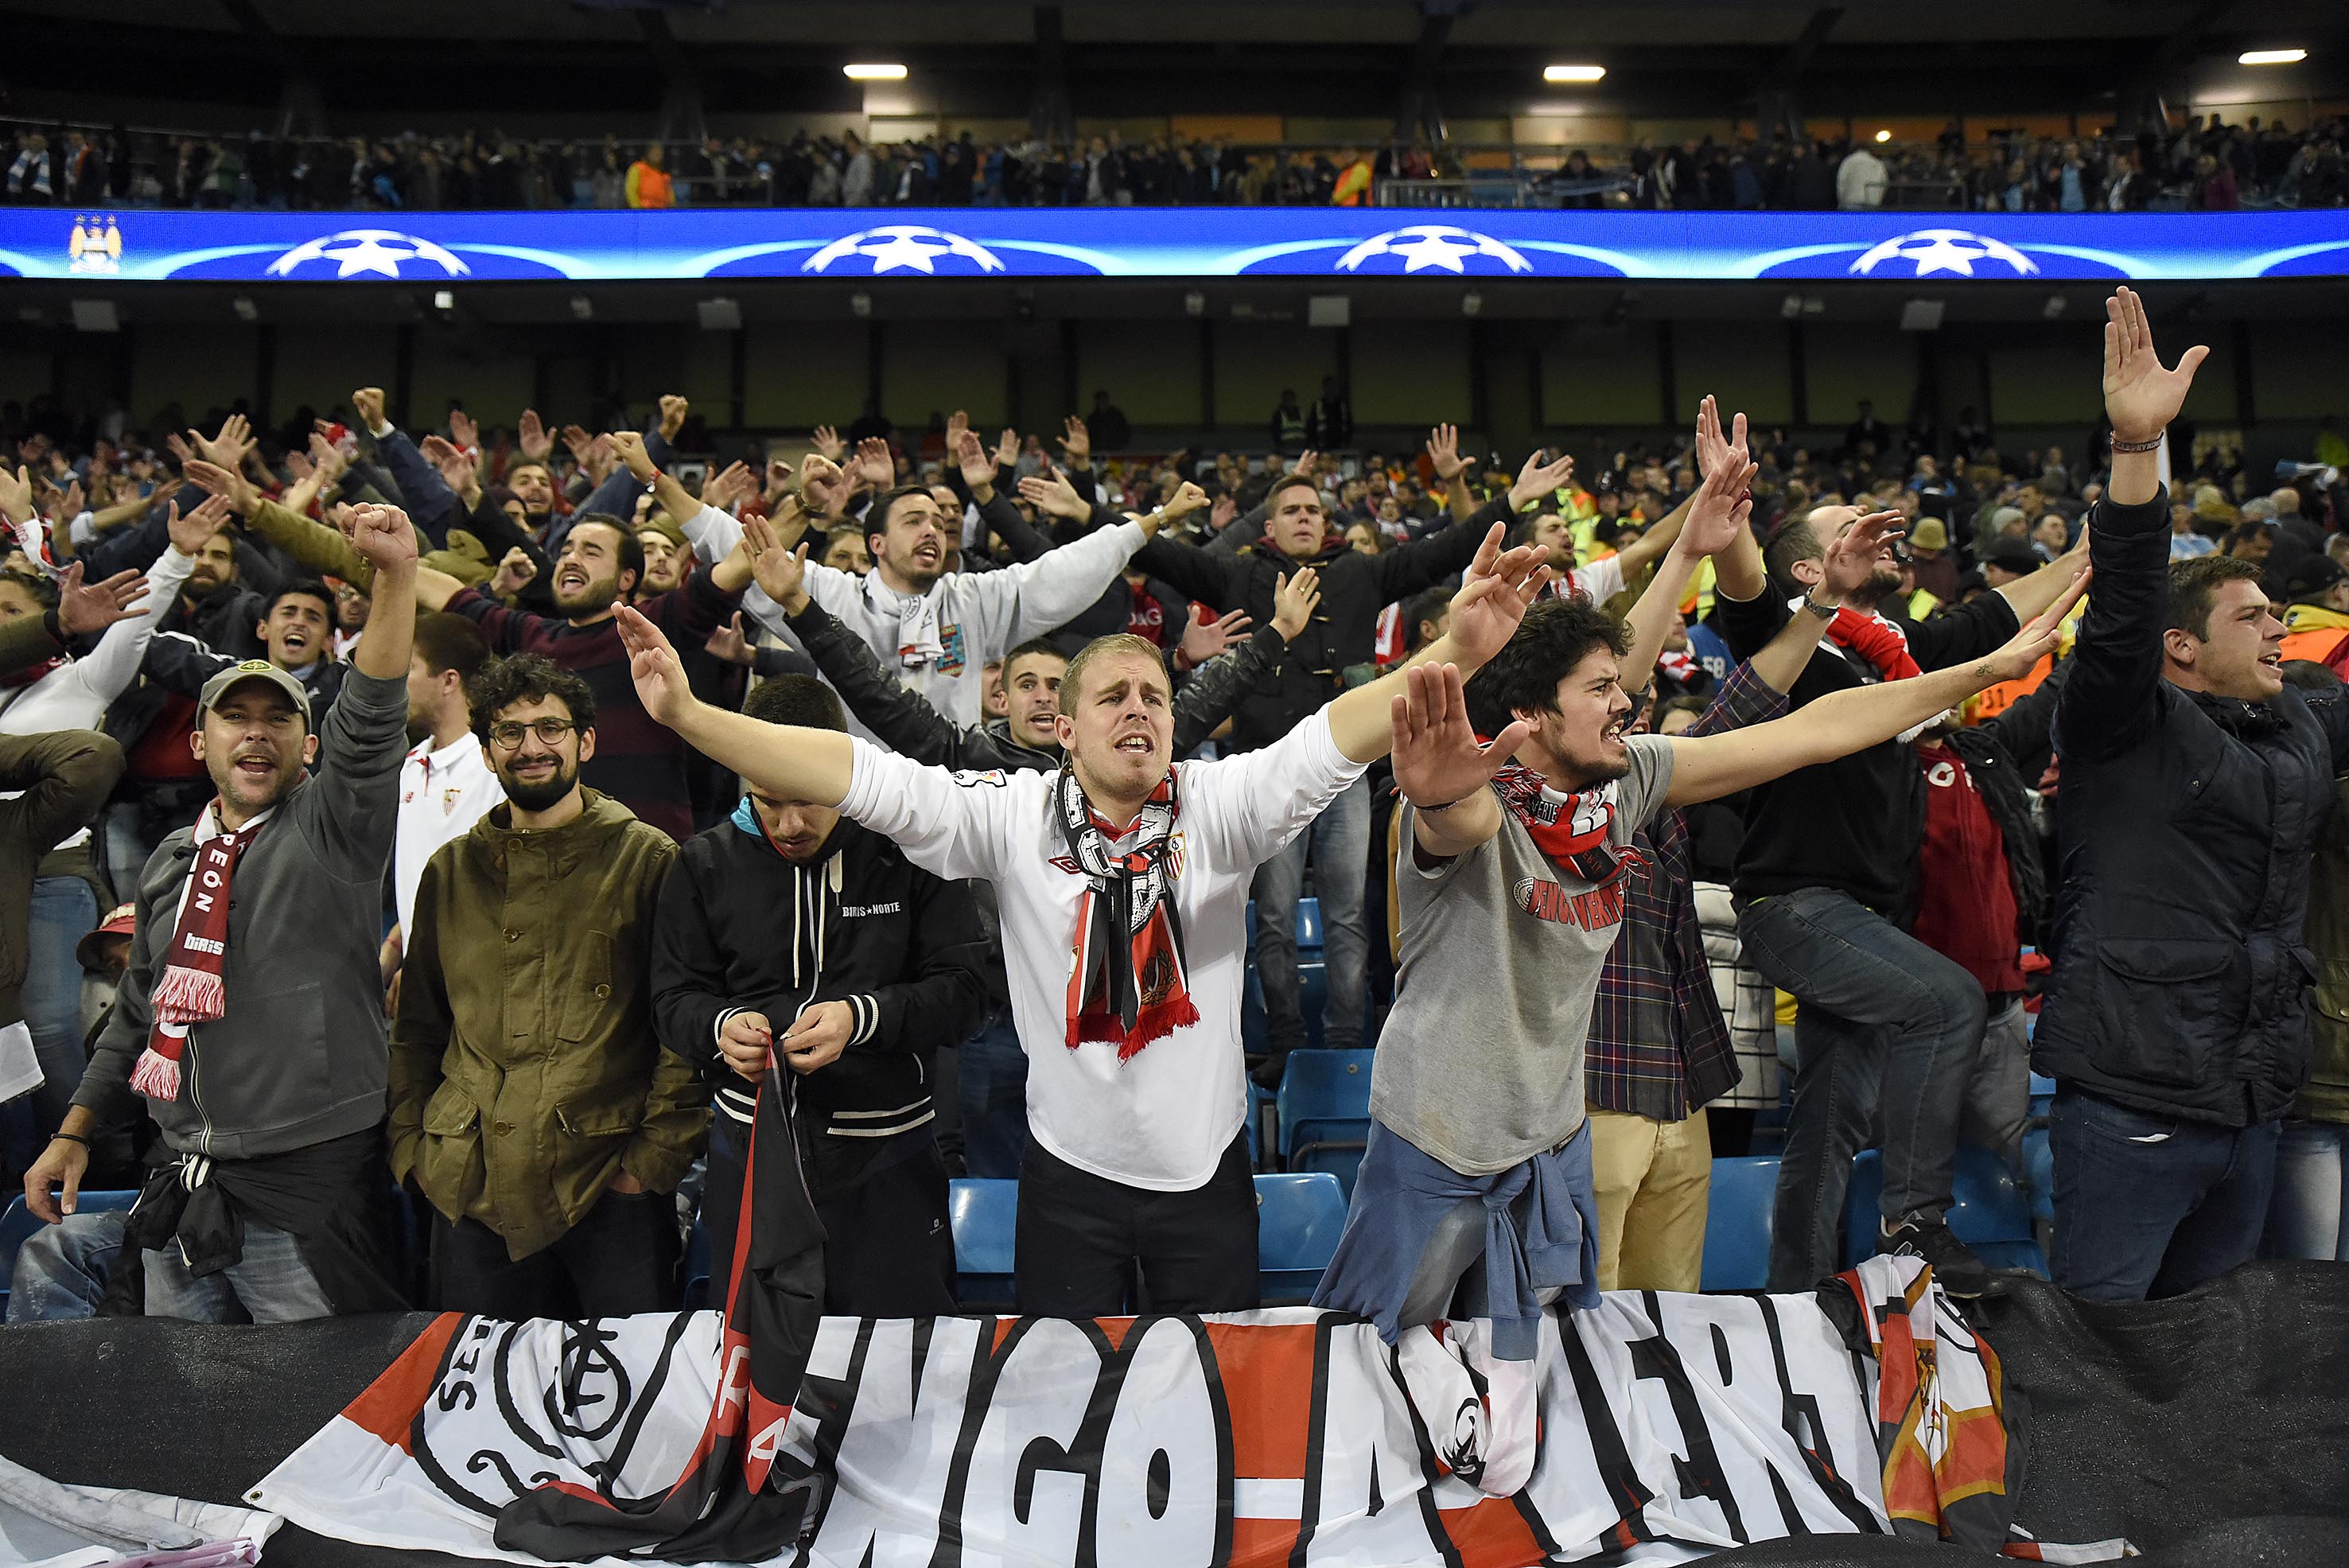 Aficionados del Sevilla FC en el Etihad Stadium